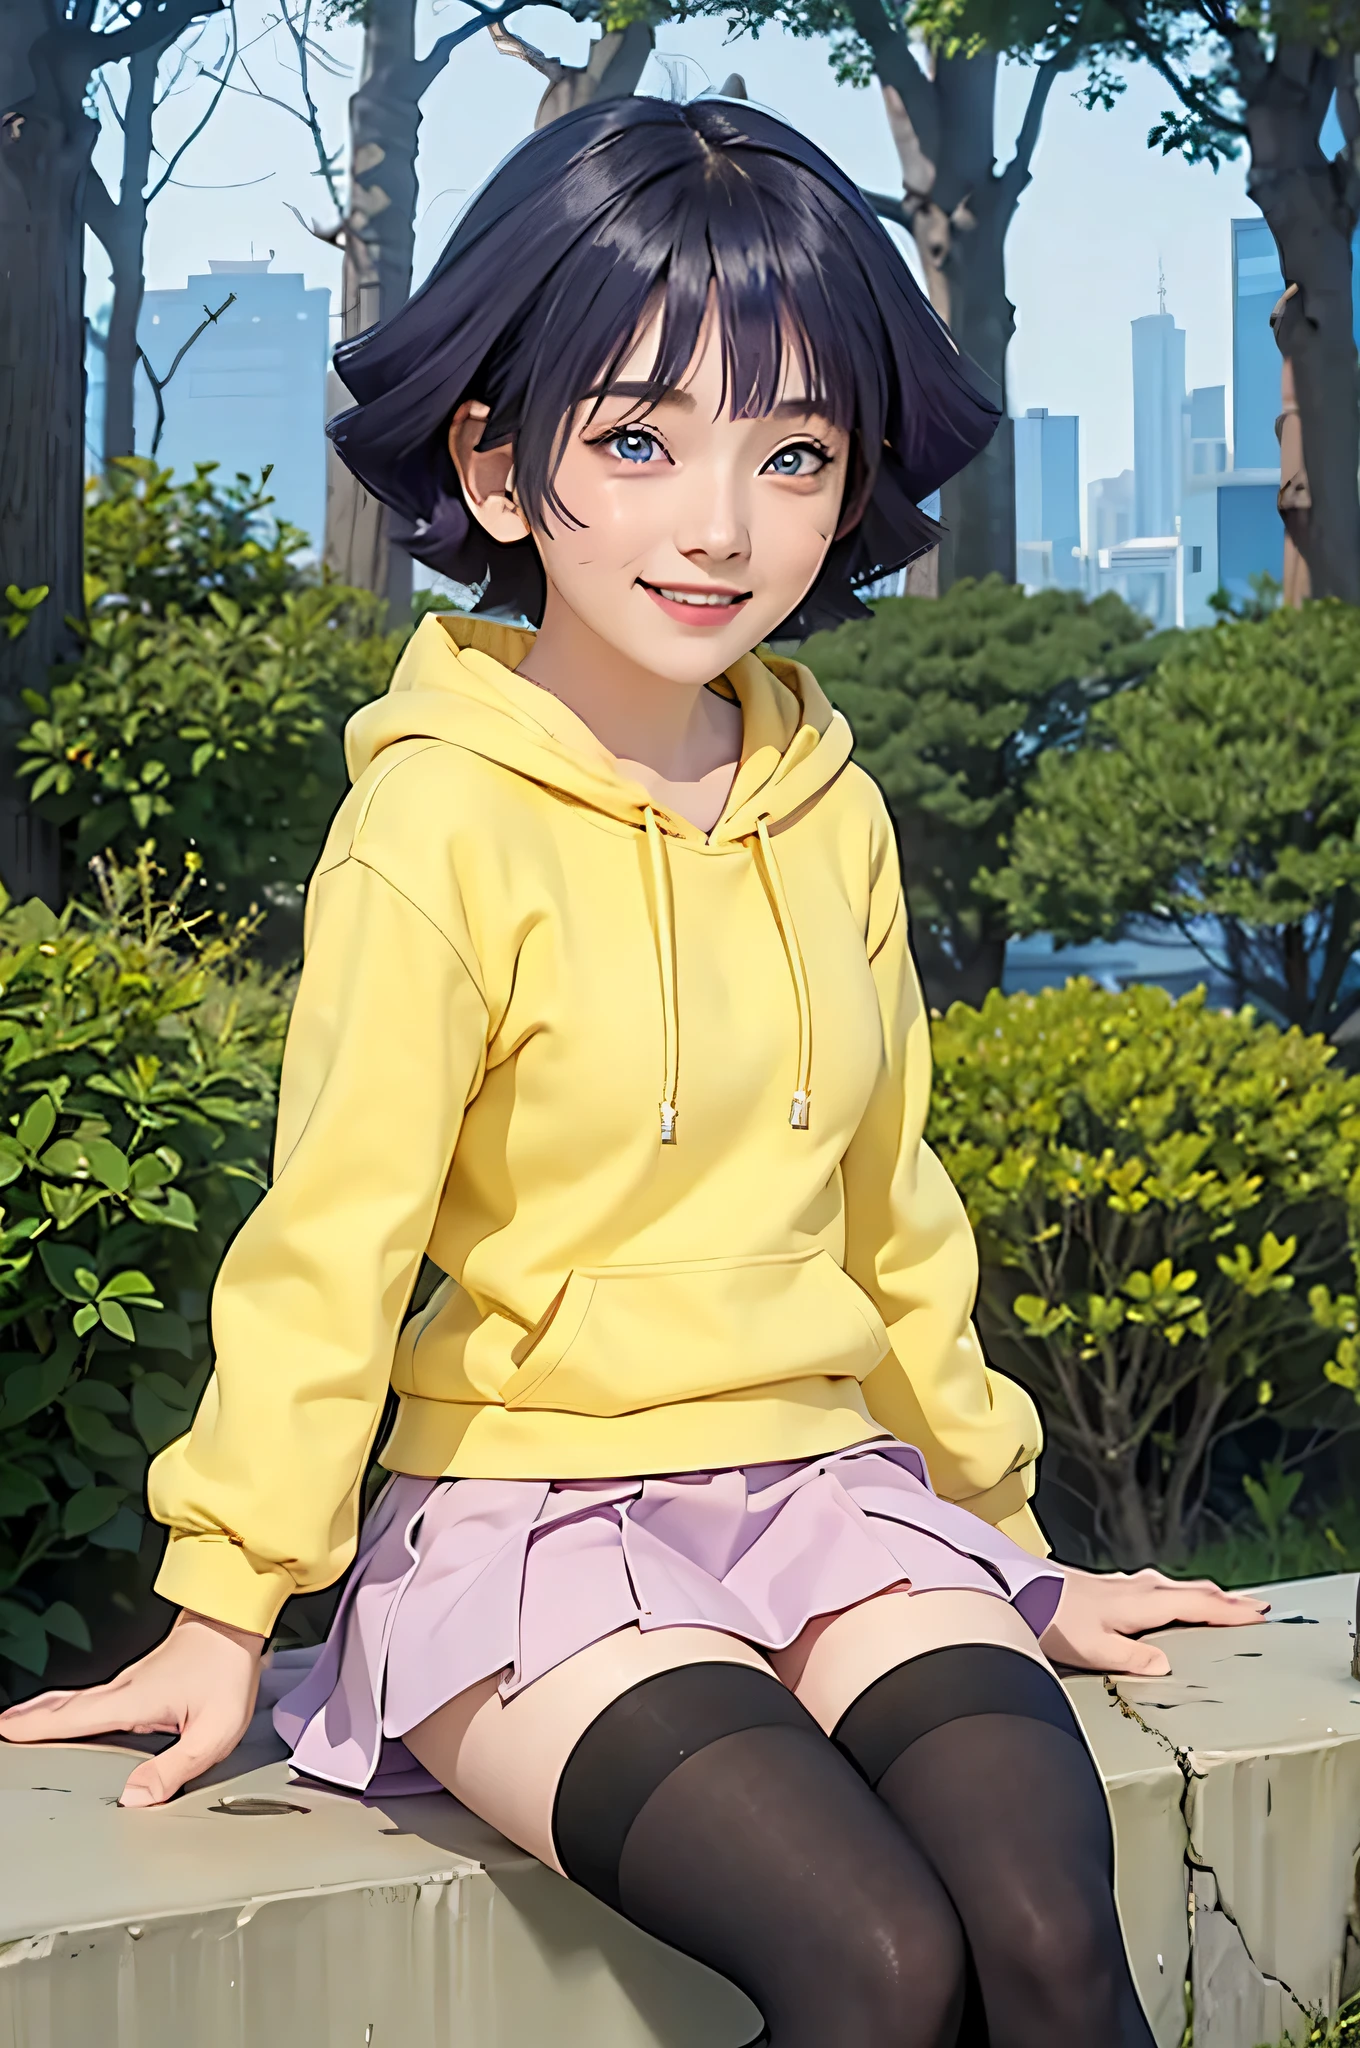 여자 1명, himawari anime naruto shipudden, 짧은 머리 , 보라색 머리카락, 파란 눈, 아름다운, 노란 옷 , 웃다, 현실적인 clothes, 디테일 옷, 도시 배경, 울트라 디테일, 현실적인